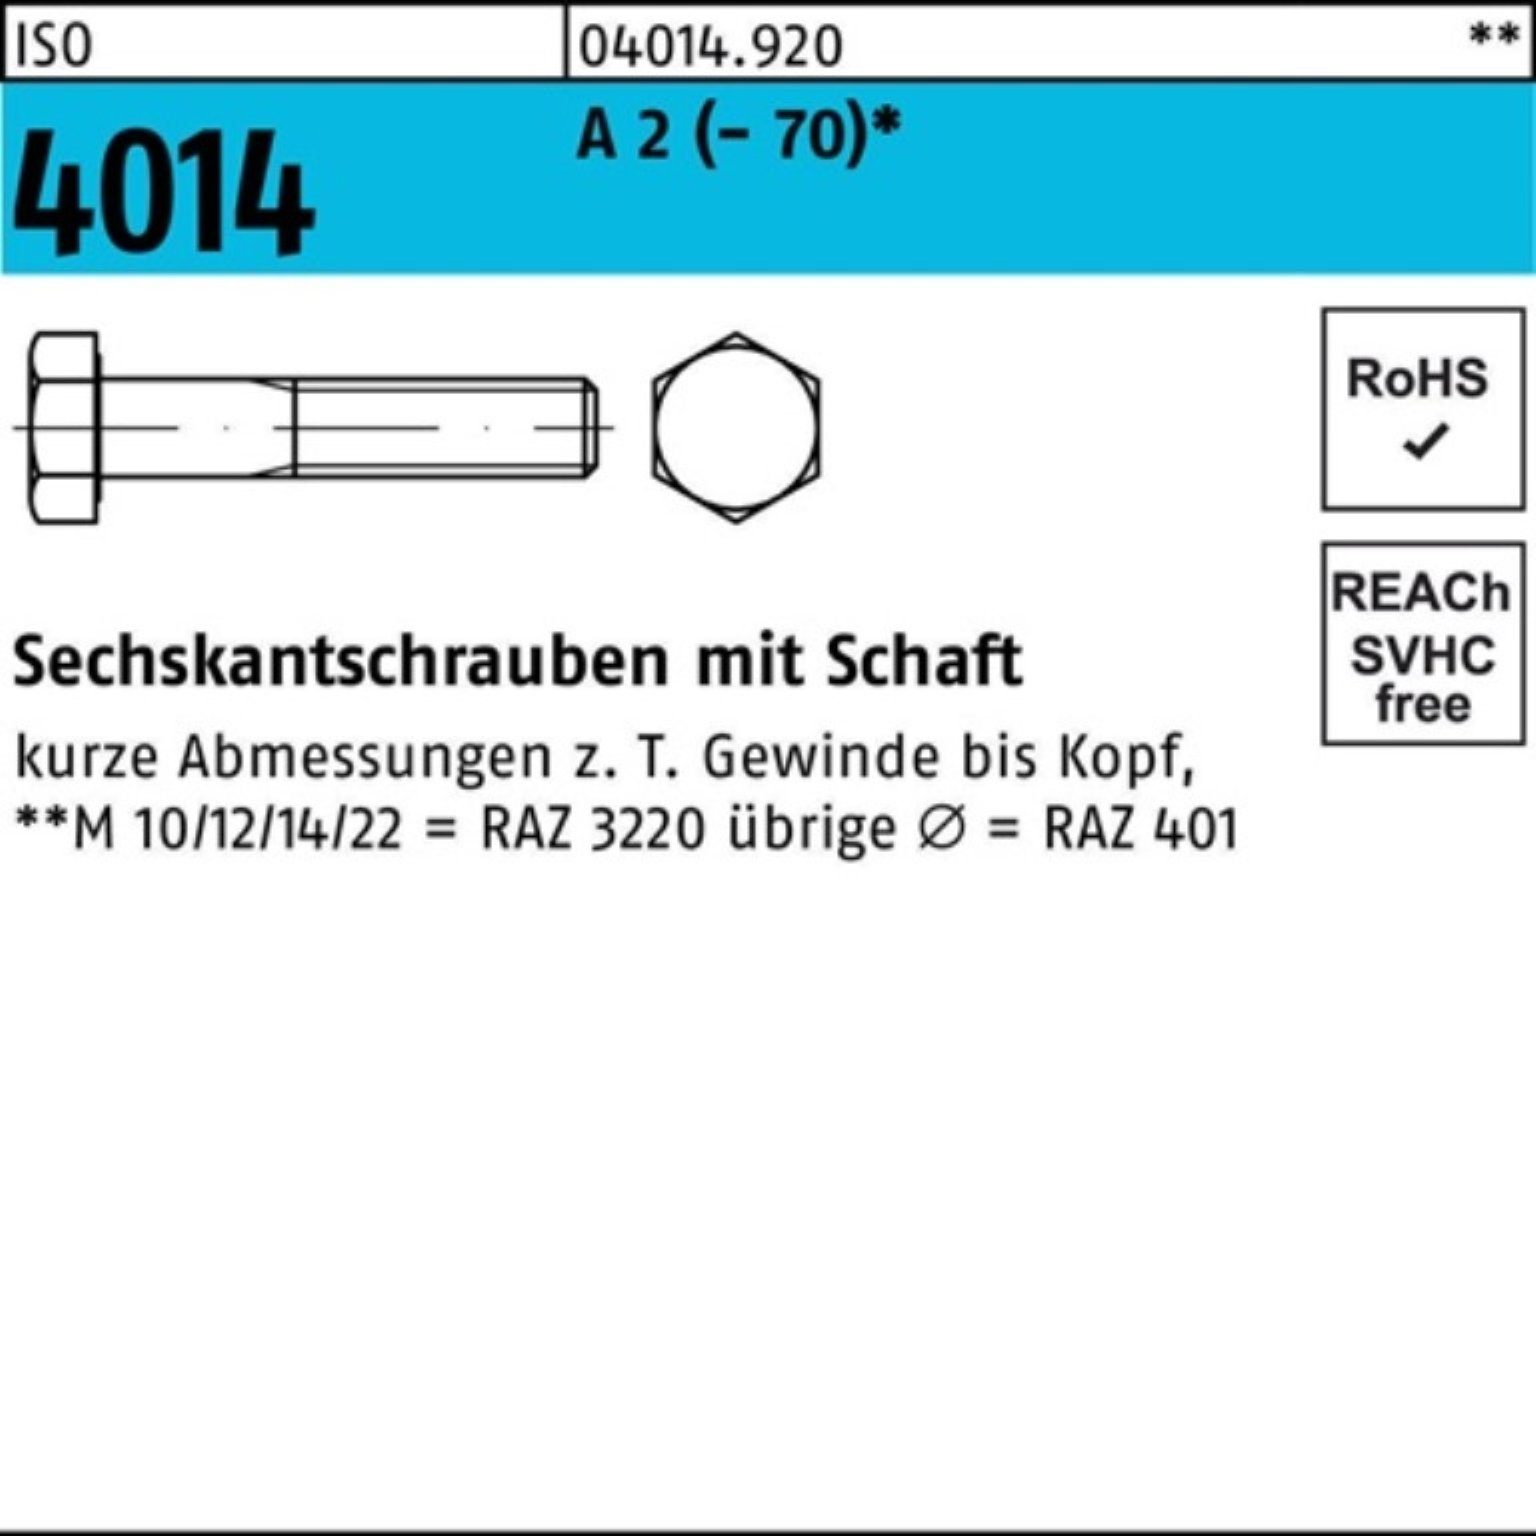 Bufab Sechskantschraube 100er Pack Sechskantschraube ISO 4014 Schaft M24x 190 A 2 (70) 1 St